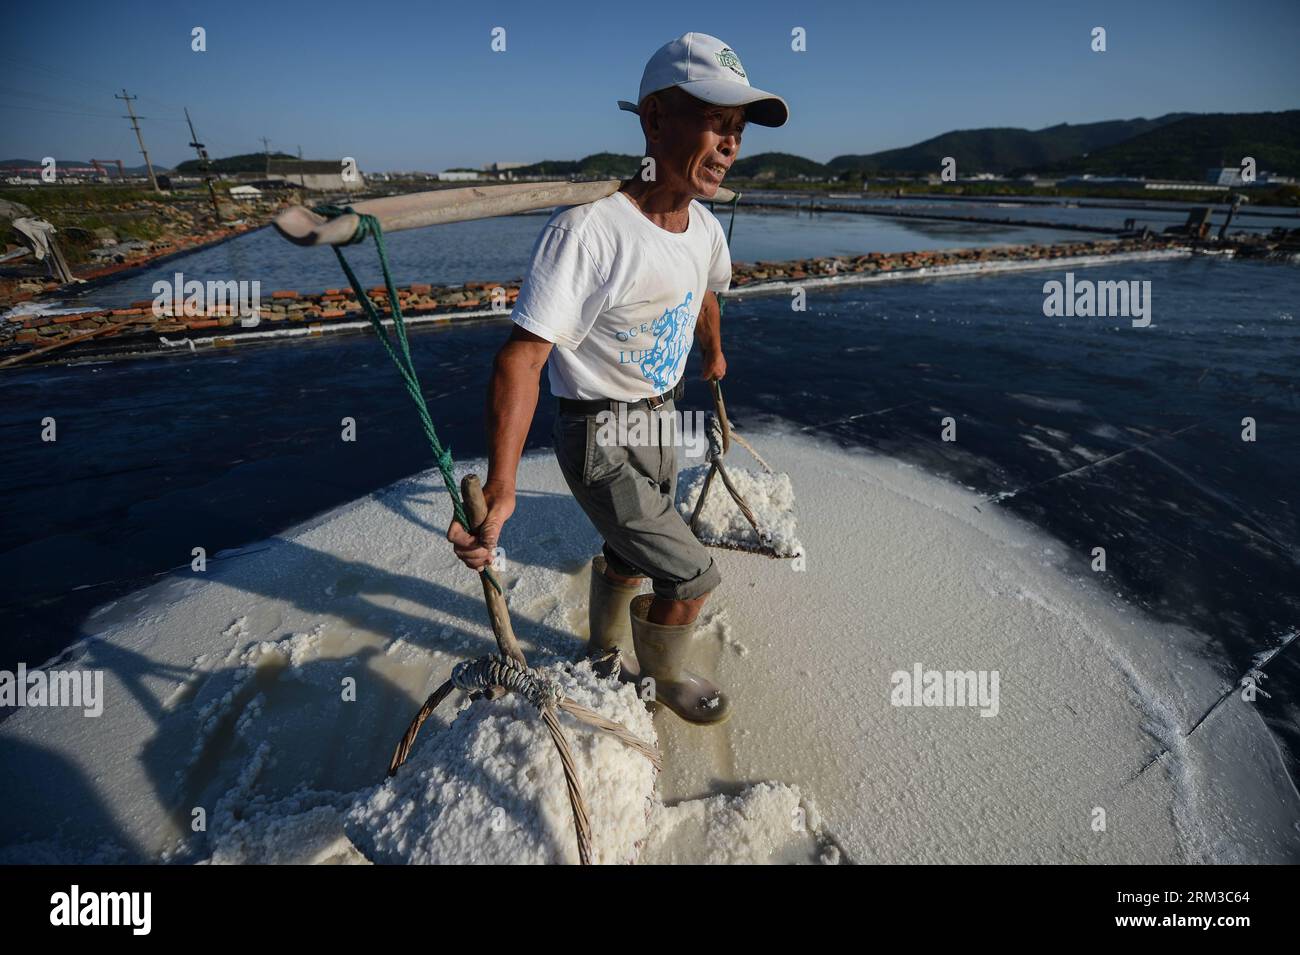 Bildnummer : 60136736 Datum : 16.07.2013 Copyright : imago/Xinhua (130716) -- DAISHAN, 16 juillet 2013 (Xinhua) -- soixante ans Shen Weiming transporte du sel dans le comté de Daishan, dans la province du Zhejiang de l'est de la Chine, 16 juillet 2013. La plupart des travailleurs dans le champ de sel ont plus de 60 ans. Daishan est le plus grand comté de production de sel dans le Zhejiang. Les travailleurs travaillent habituellement de longues heures au soleil pour évaporer la saumure pendant la période de production de sel doré de juillet à septembre, les trois mois les plus chauds de l'été. En raison du travail acharné et du faible revenu, moins de jeunes hommes aimeraient être engagés dans ce co Banque D'Images